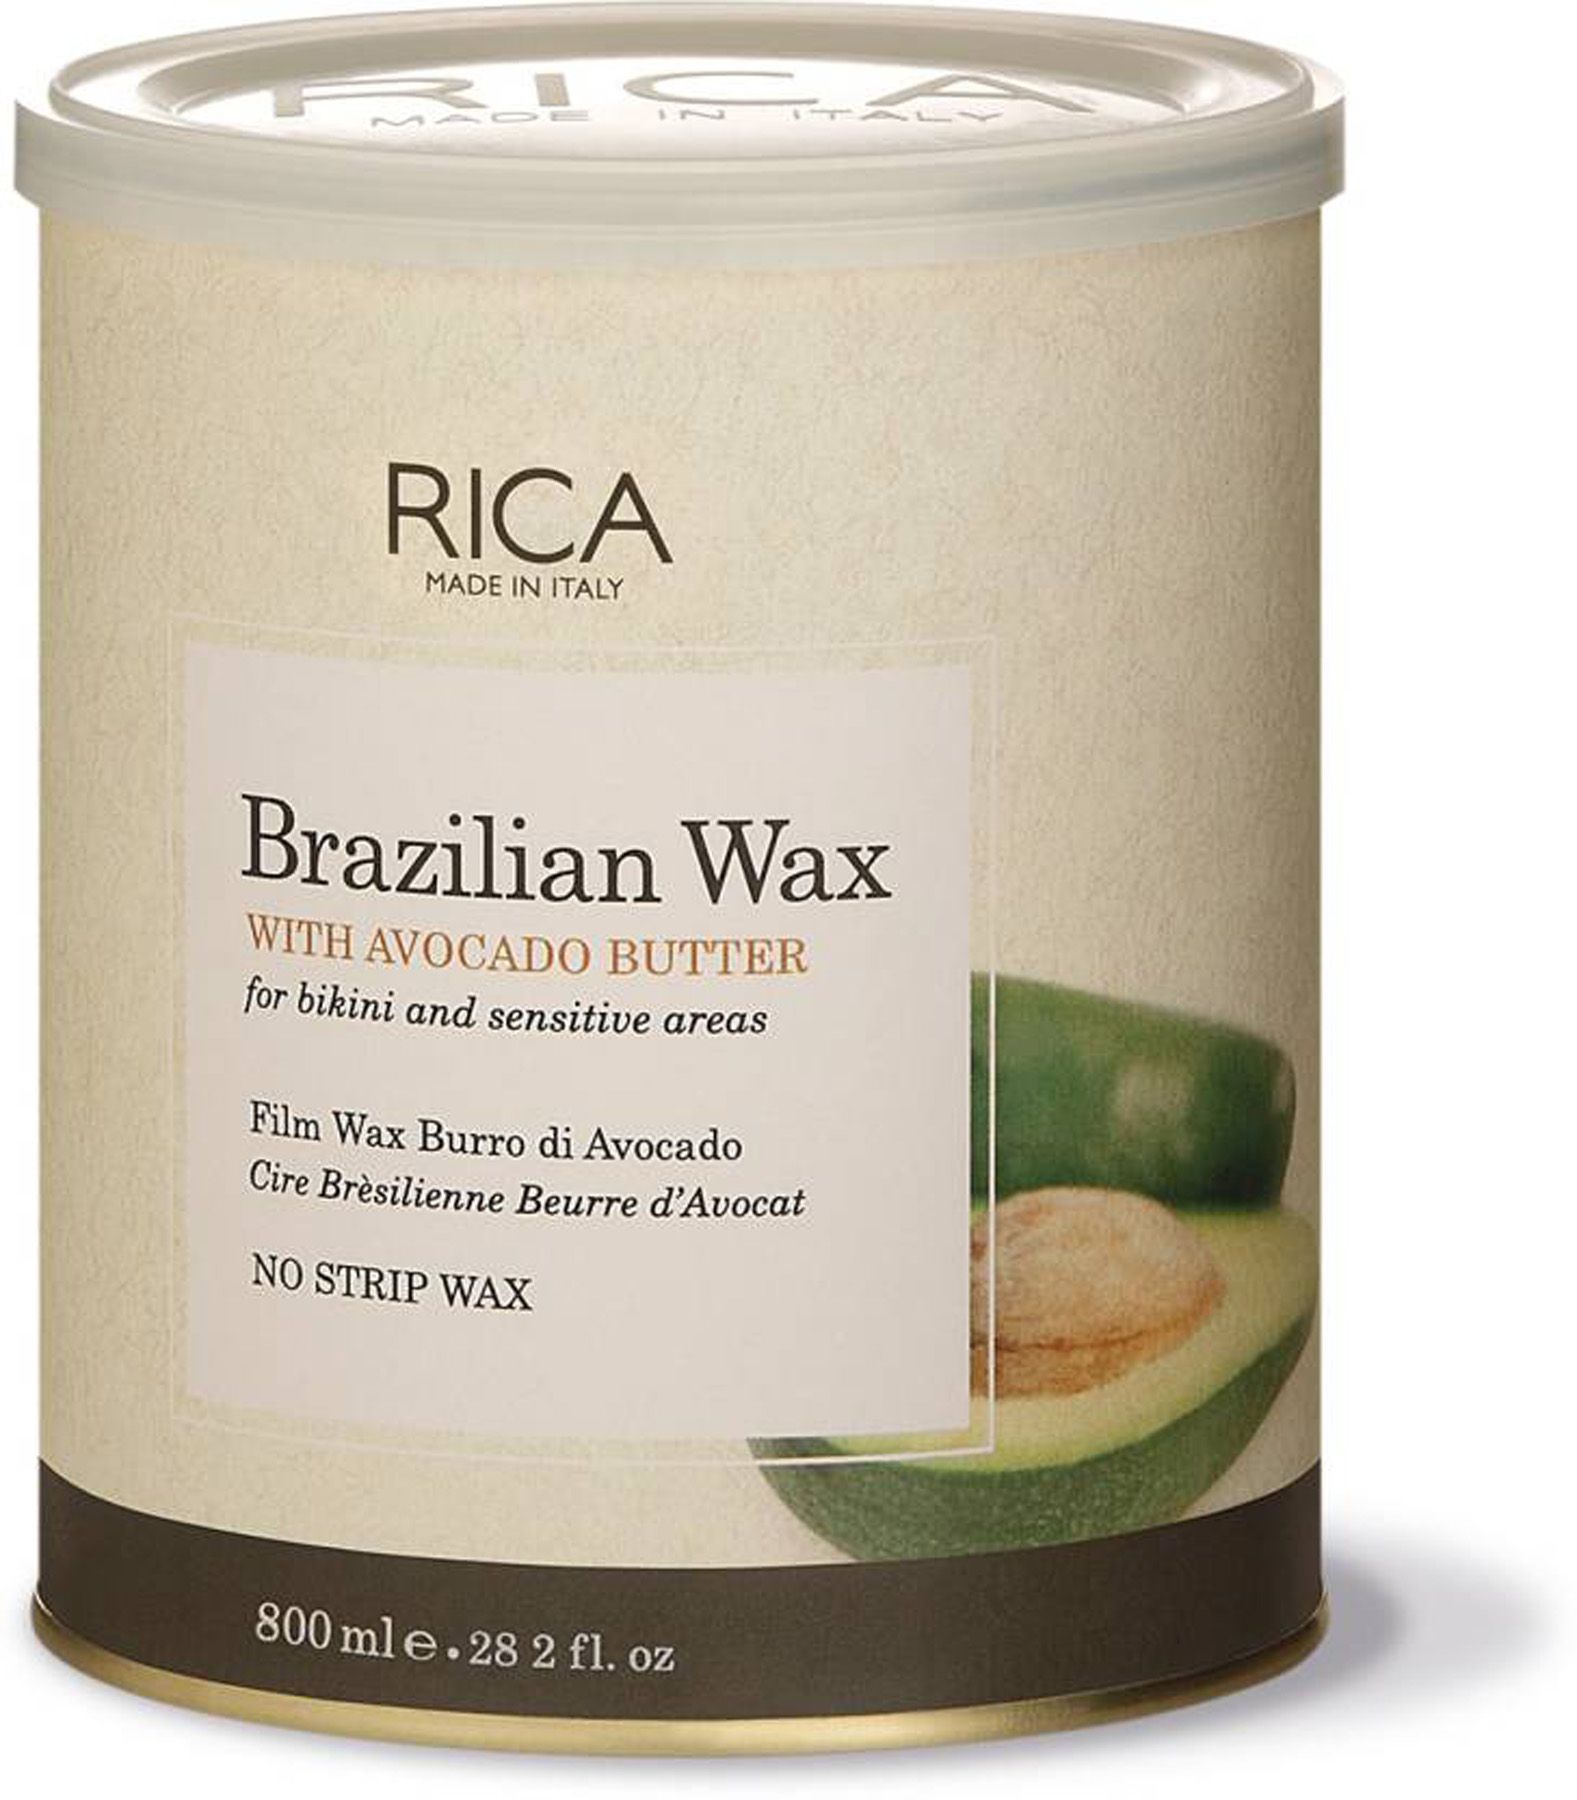 Rica Brazilian Hot Wax 800 Ml Buy Rica Brazilian Hot Wax 800 Ml At 